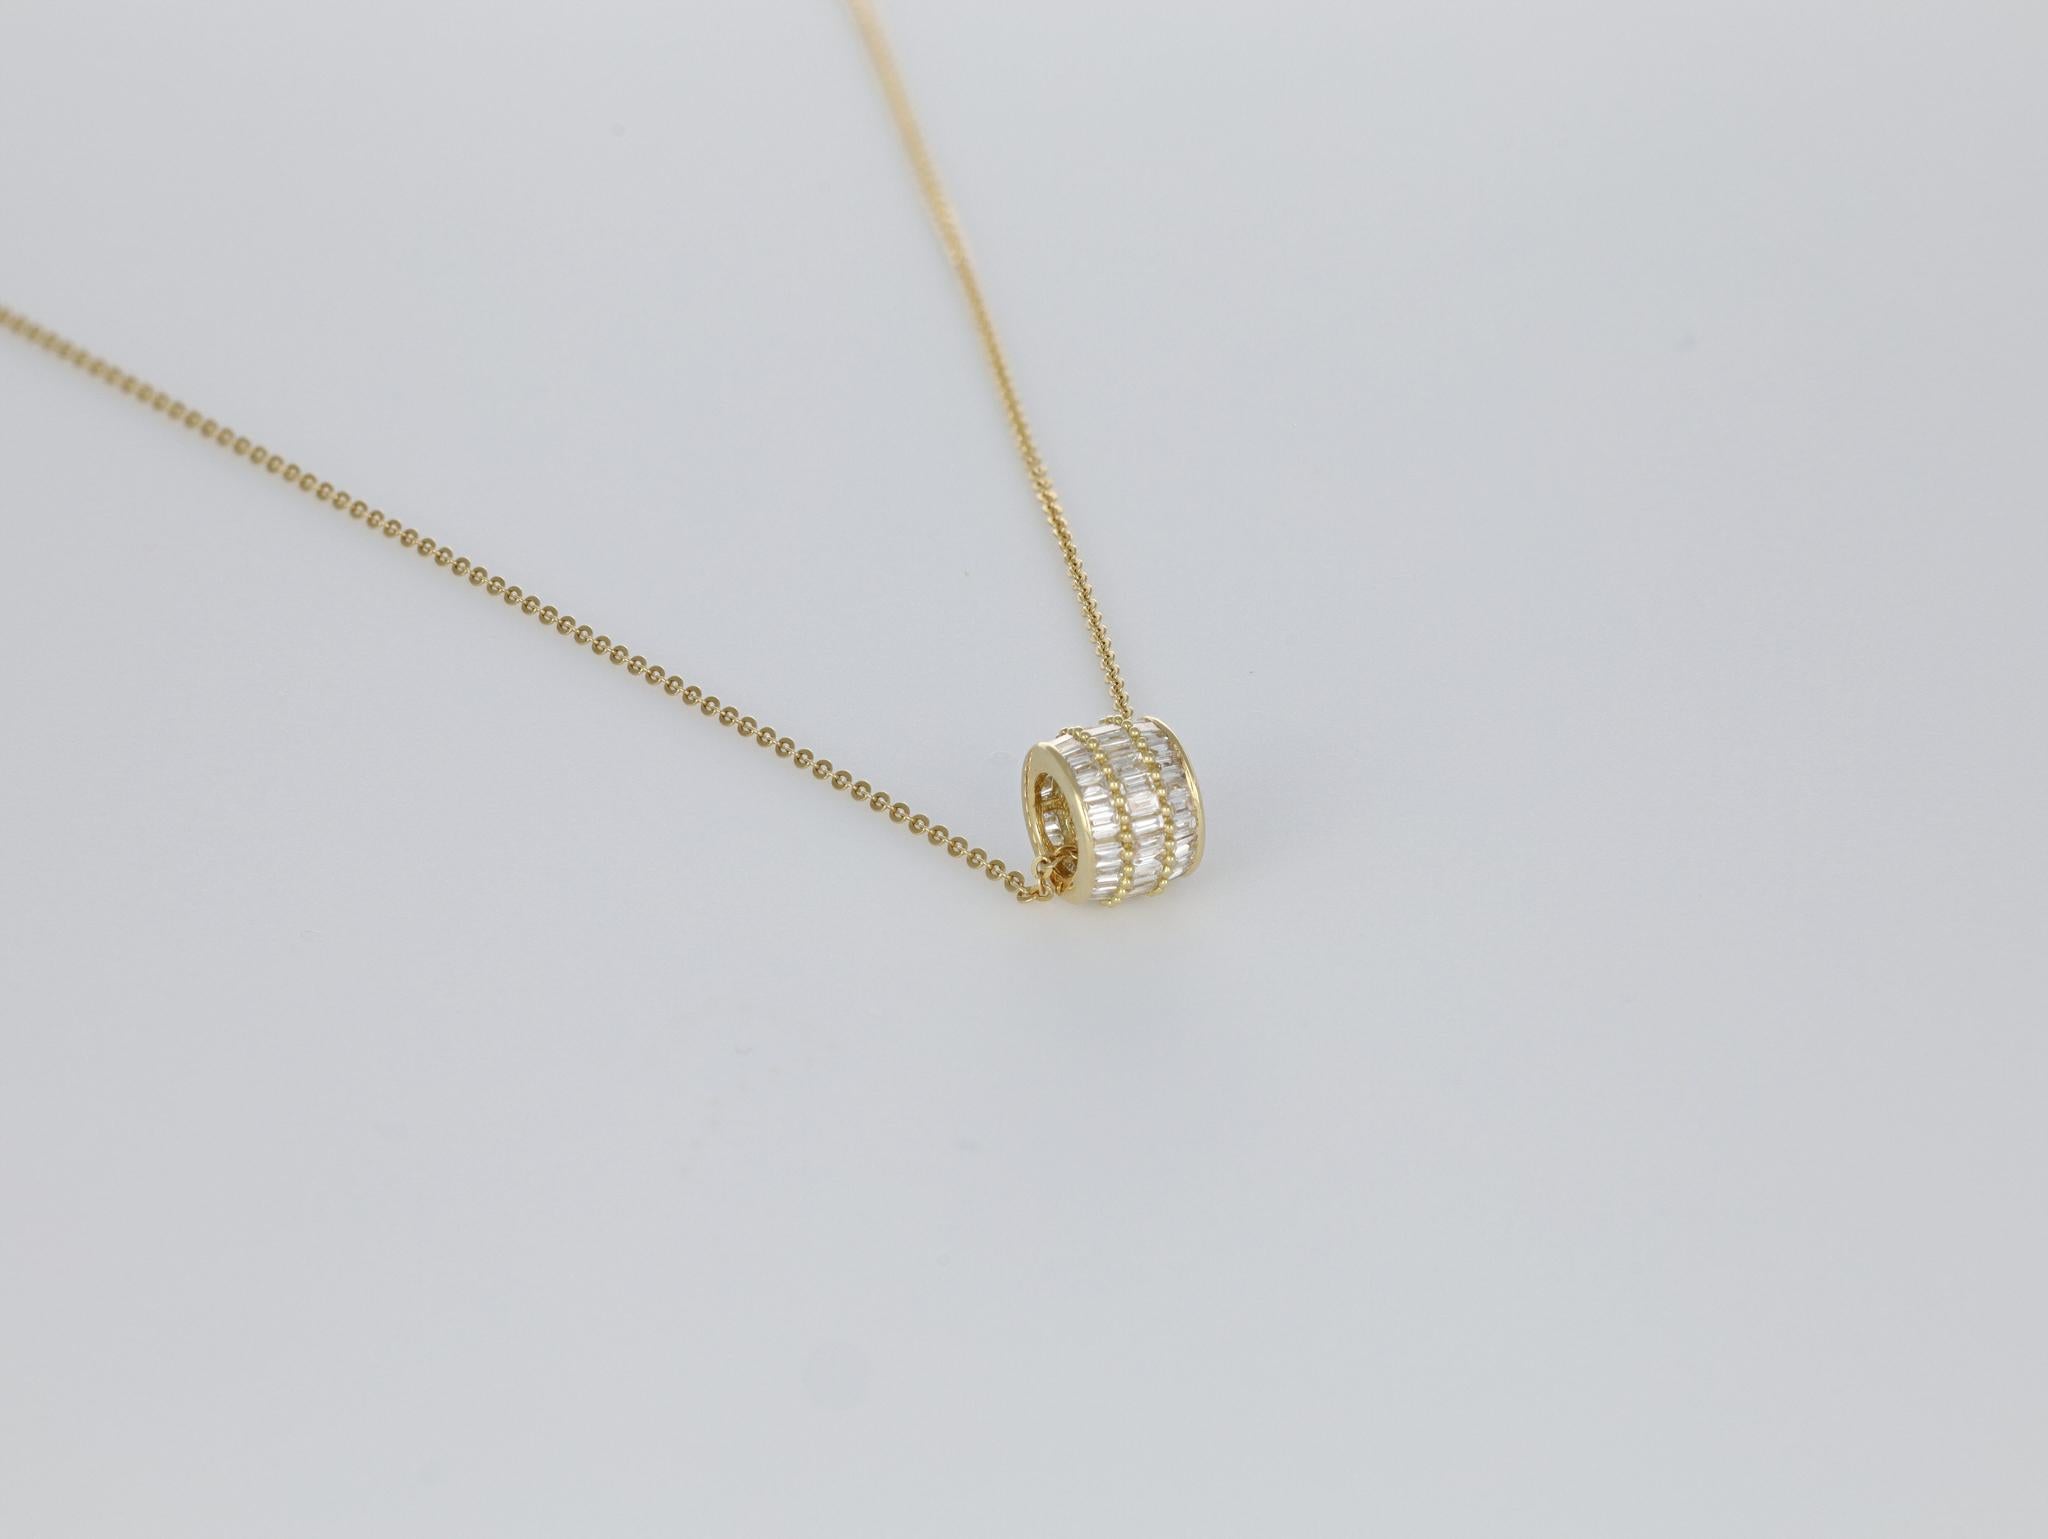 Baguette Cut Natural Diamond 0.51 carats 18 Karat White Gold Chain Pendant Necklace For Sale